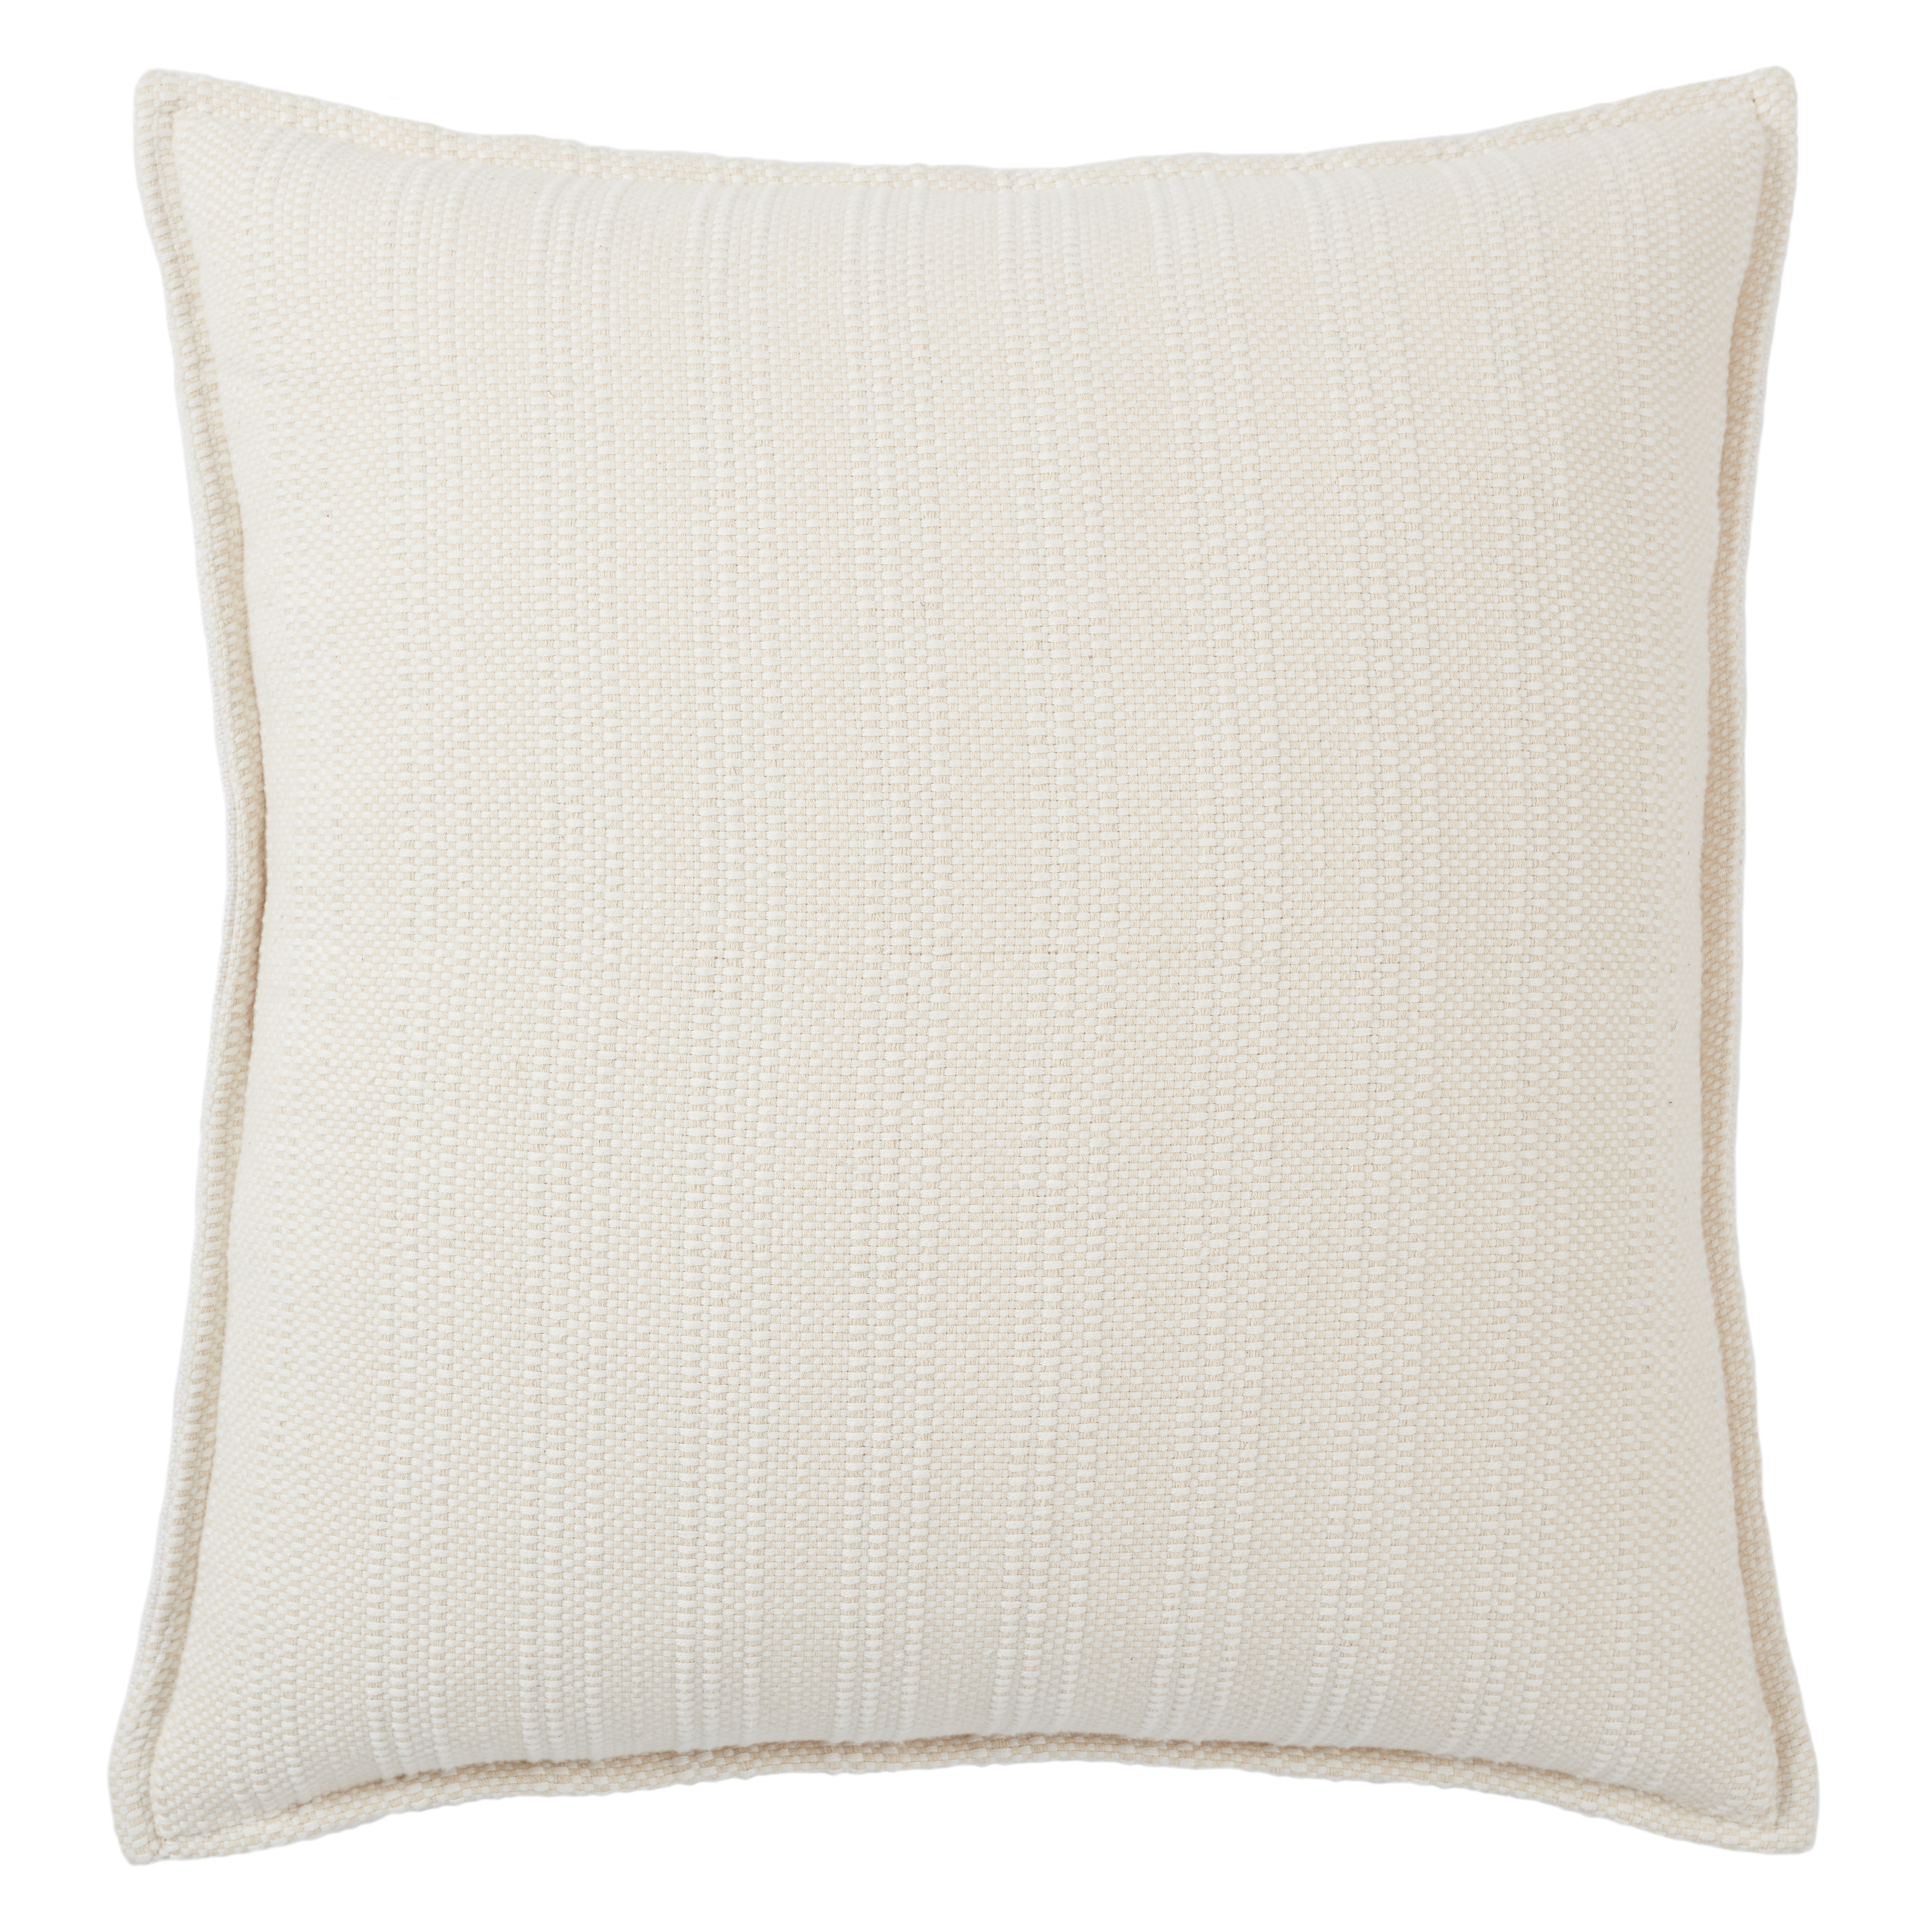 Design (US) Cream 22"X22" Pillow - Jaipur Living